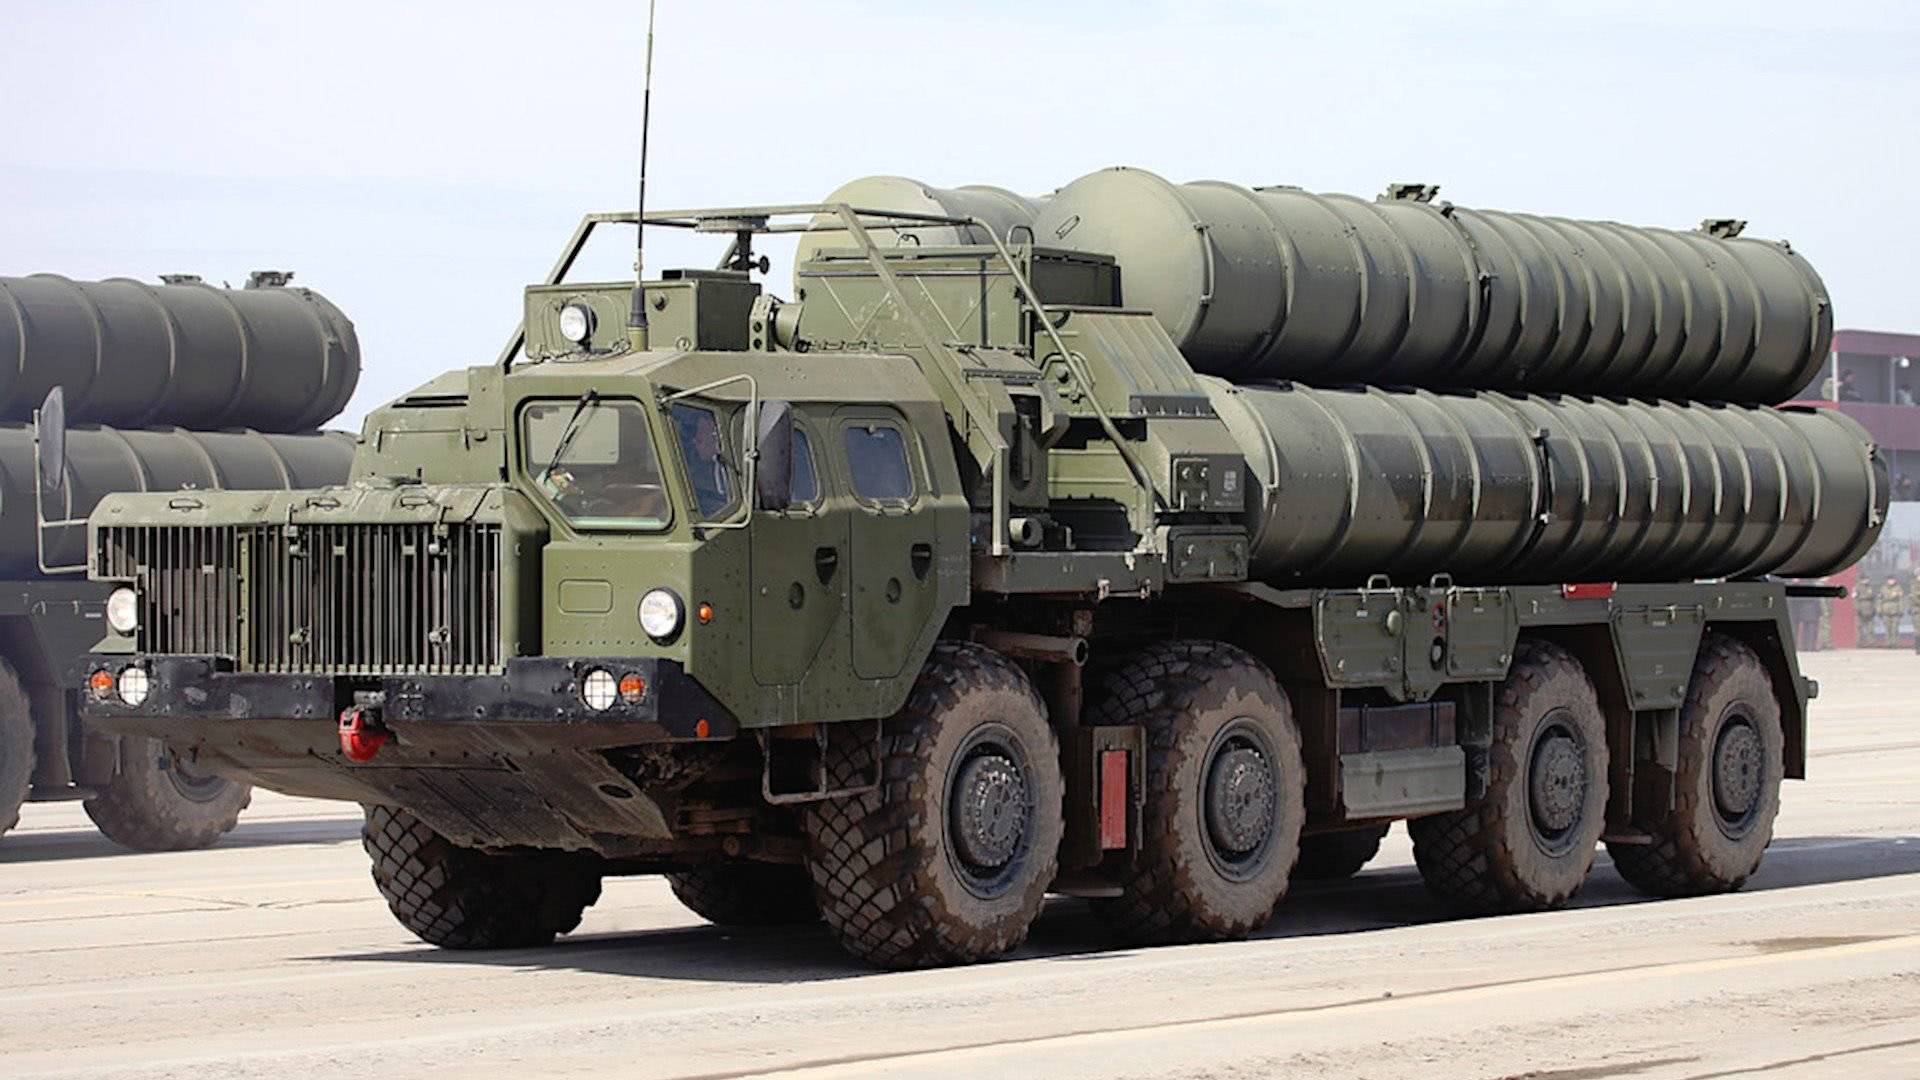 外媒：俄披露售华S400导弹受损详情，承认合同含40N6导弹